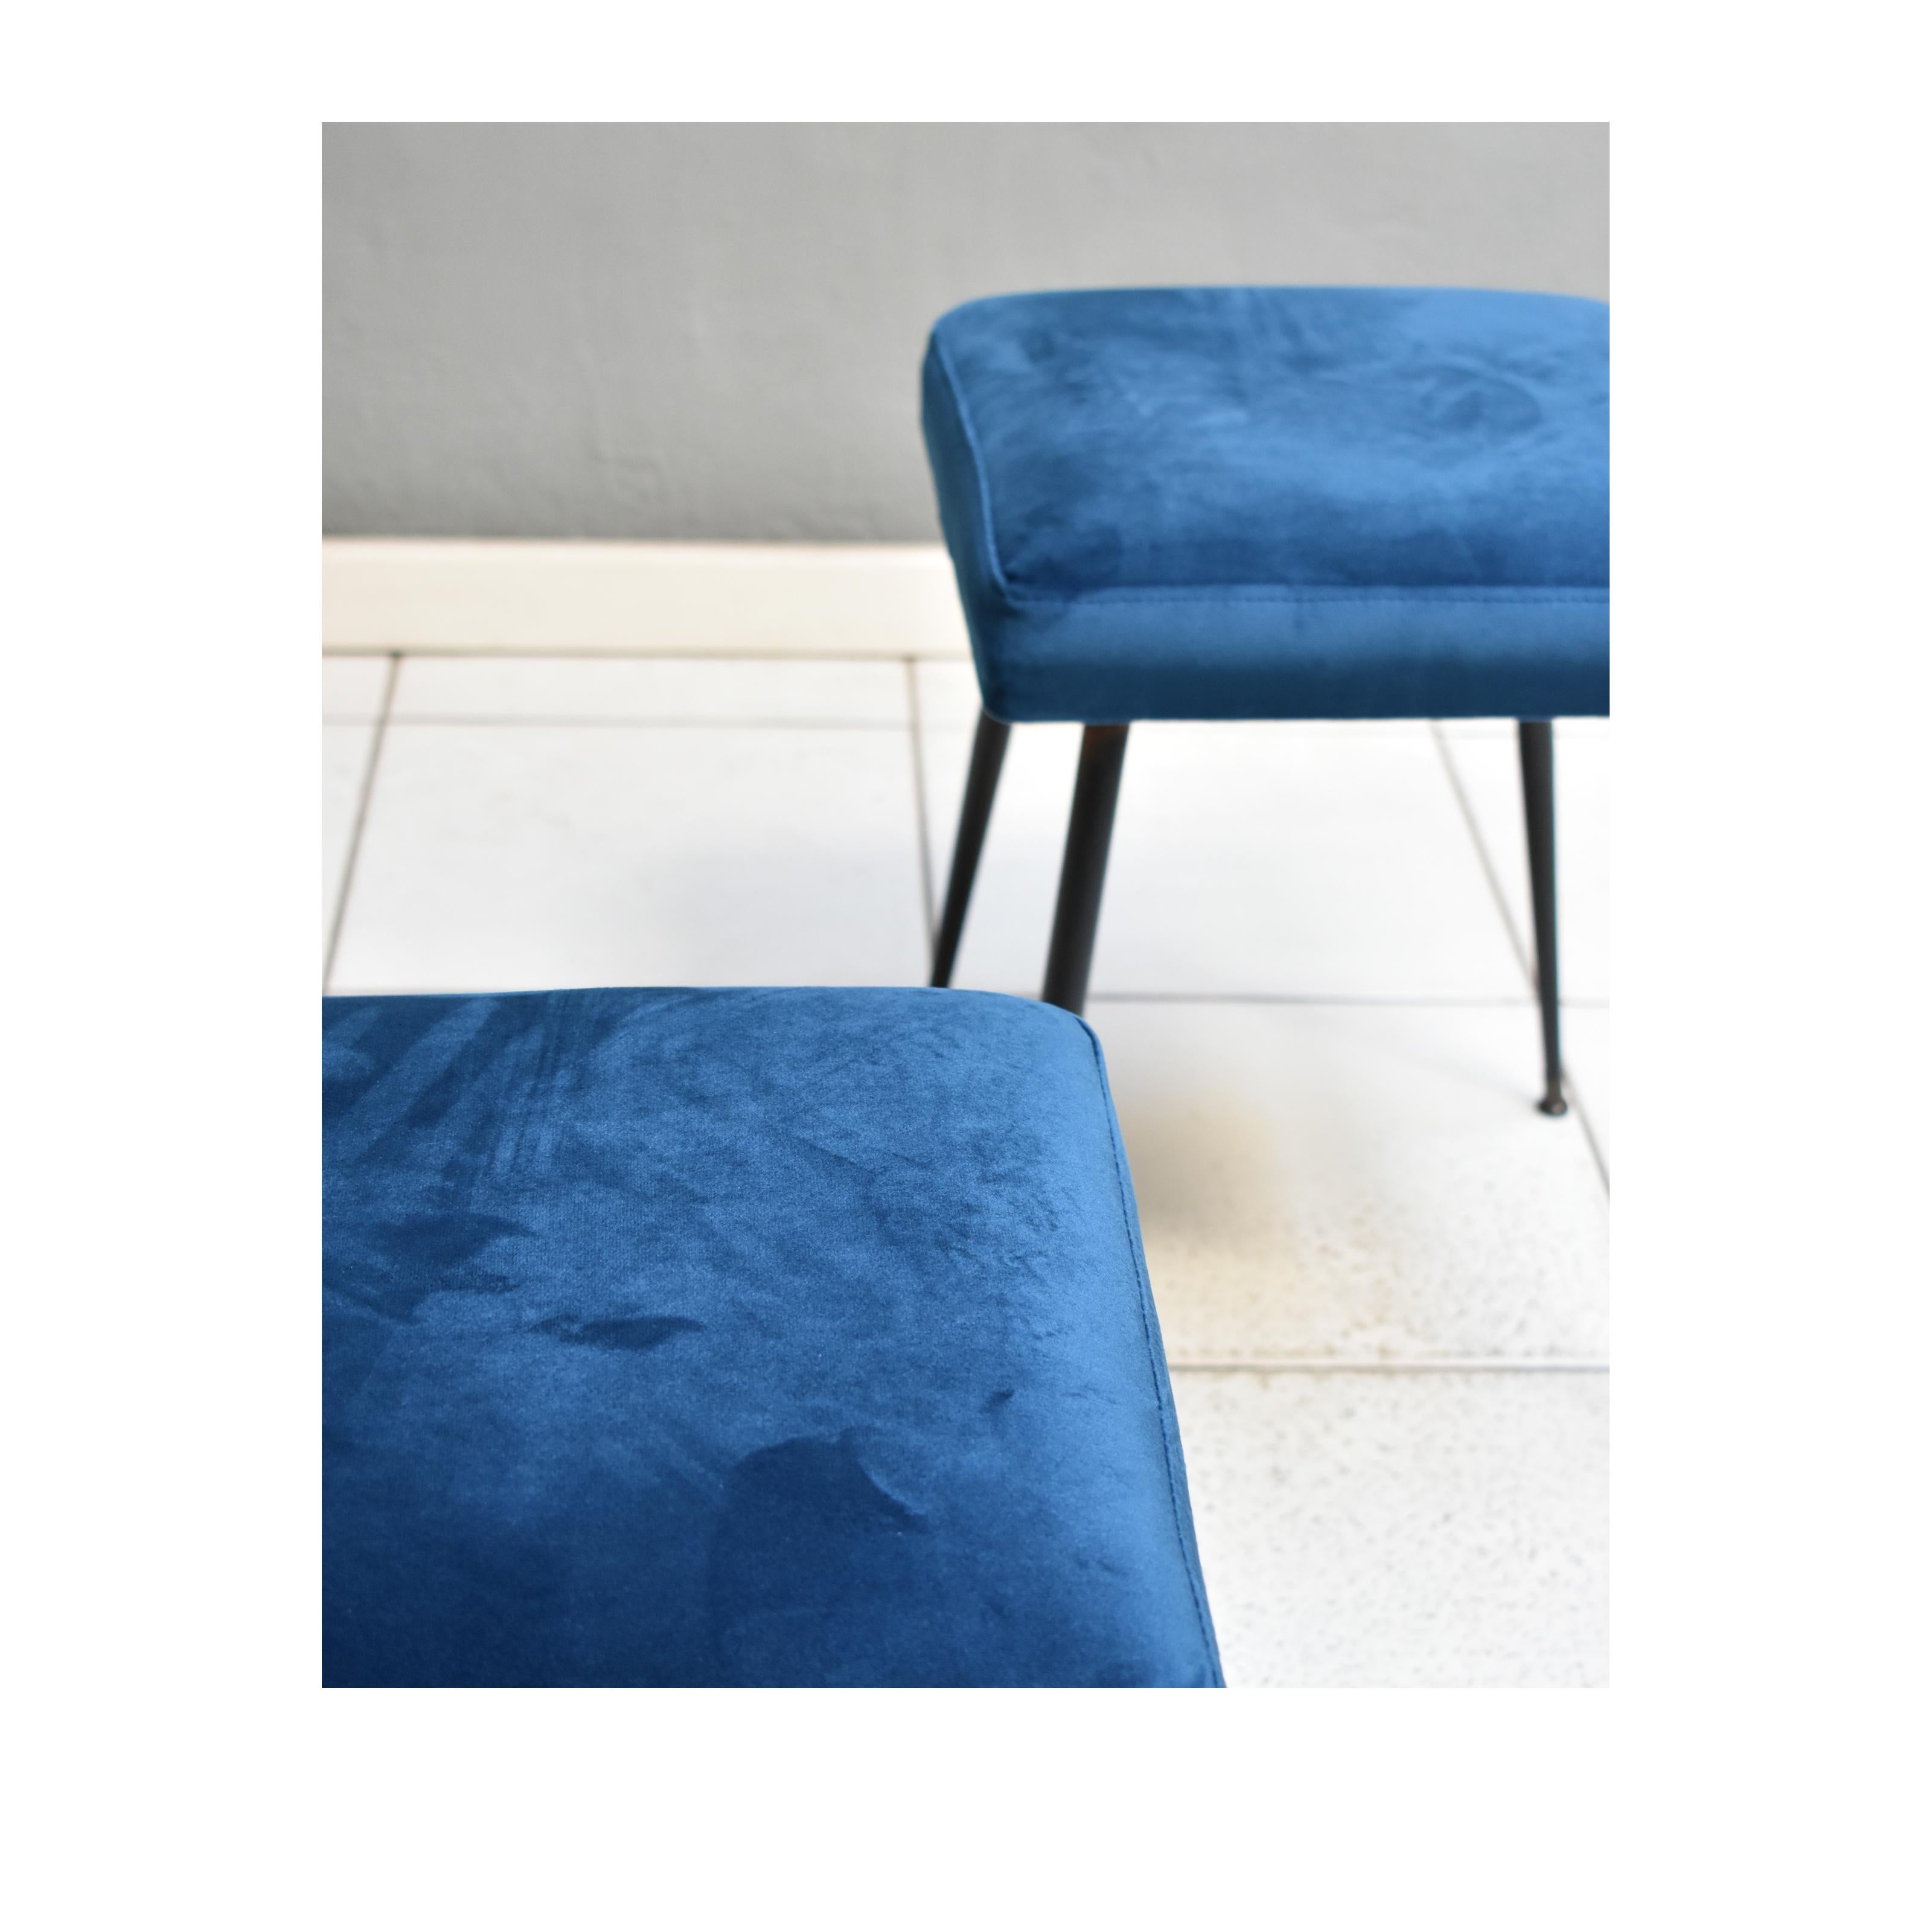 Italian Set of Two Poufs 60s Stools, Brass Feet and Petroleum Blue Velvet Upholstery For Sale